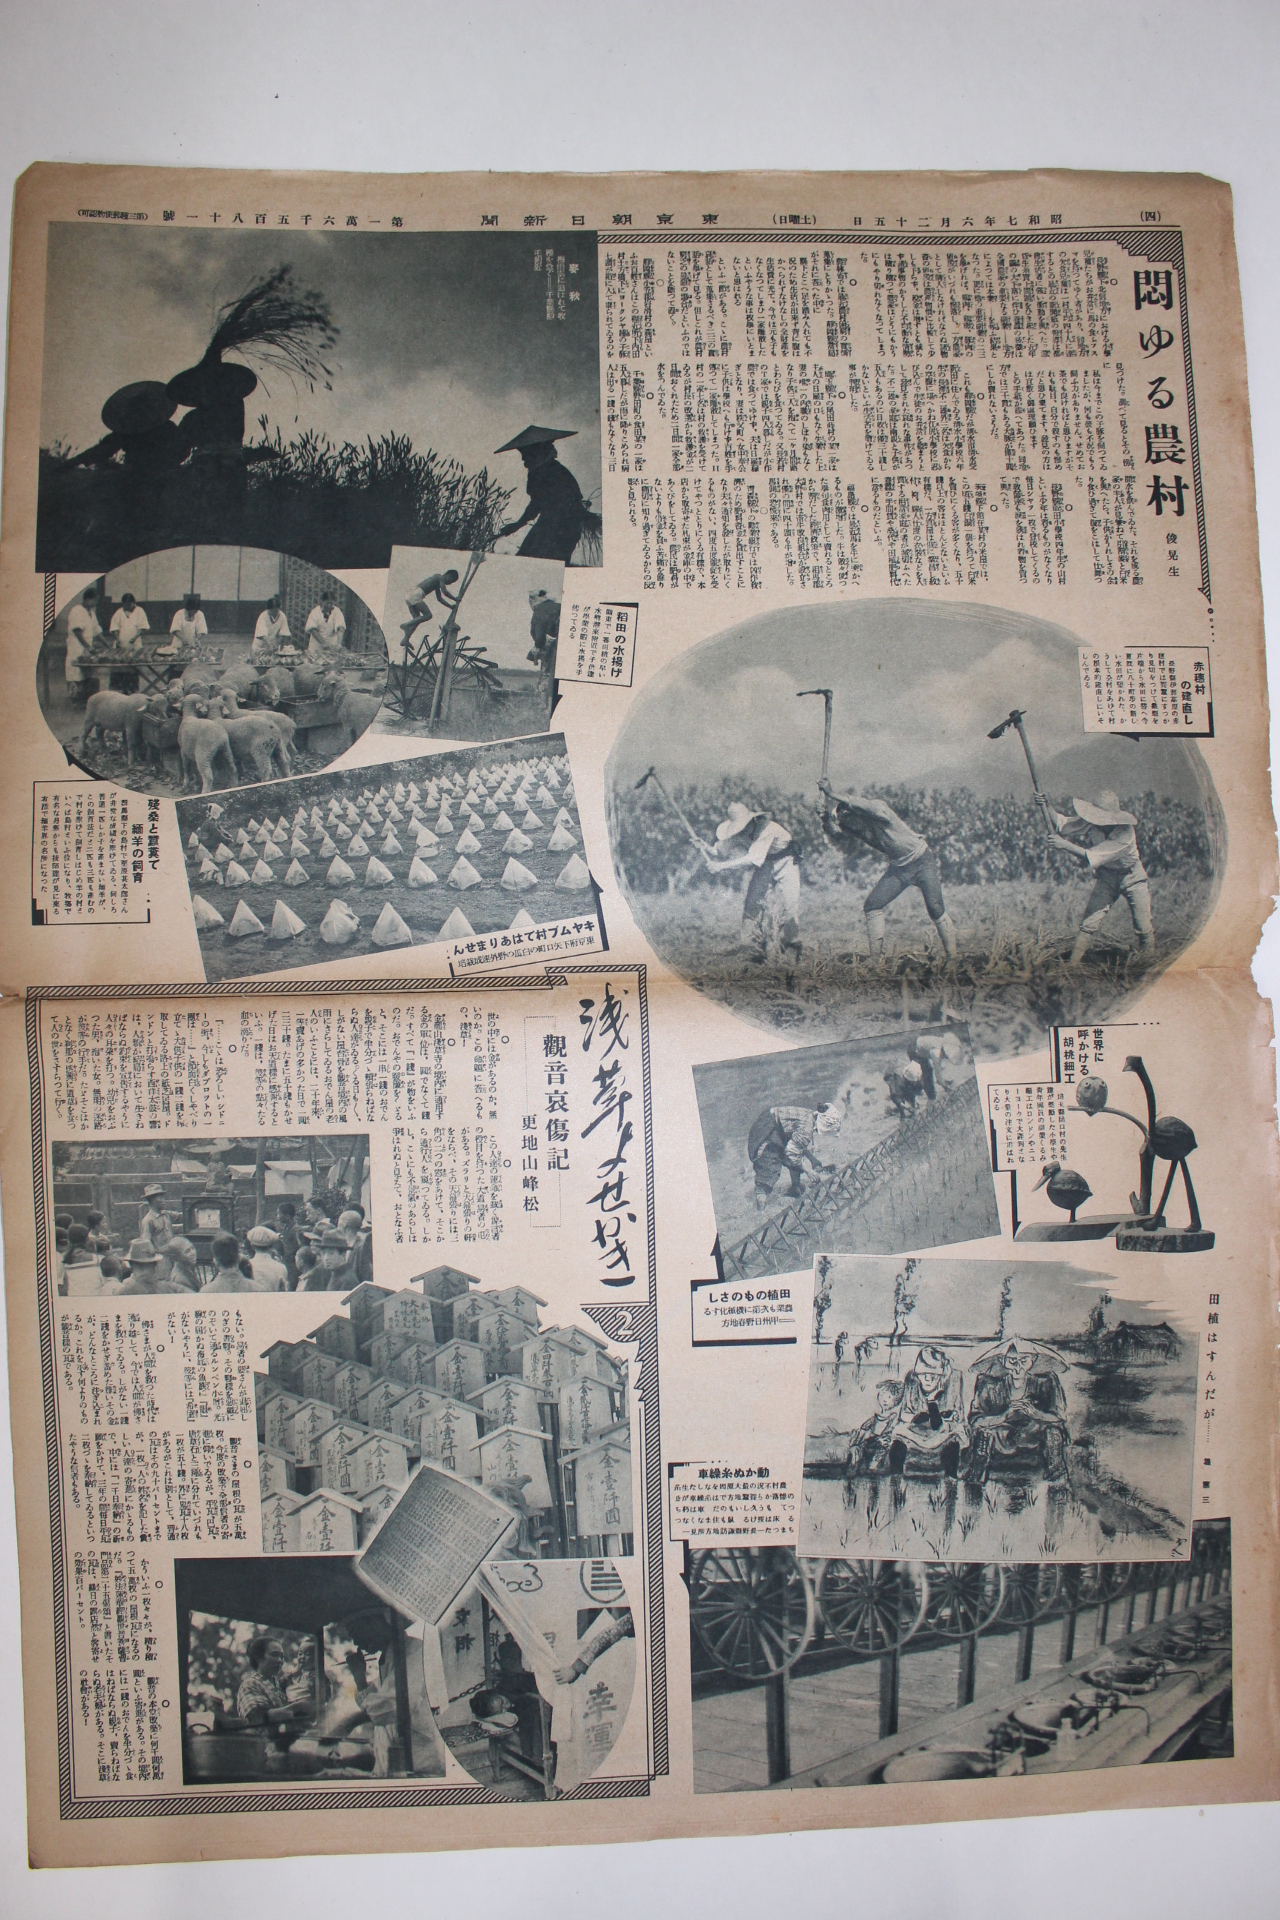 1932년 동경조일신문 6월25일자 한장